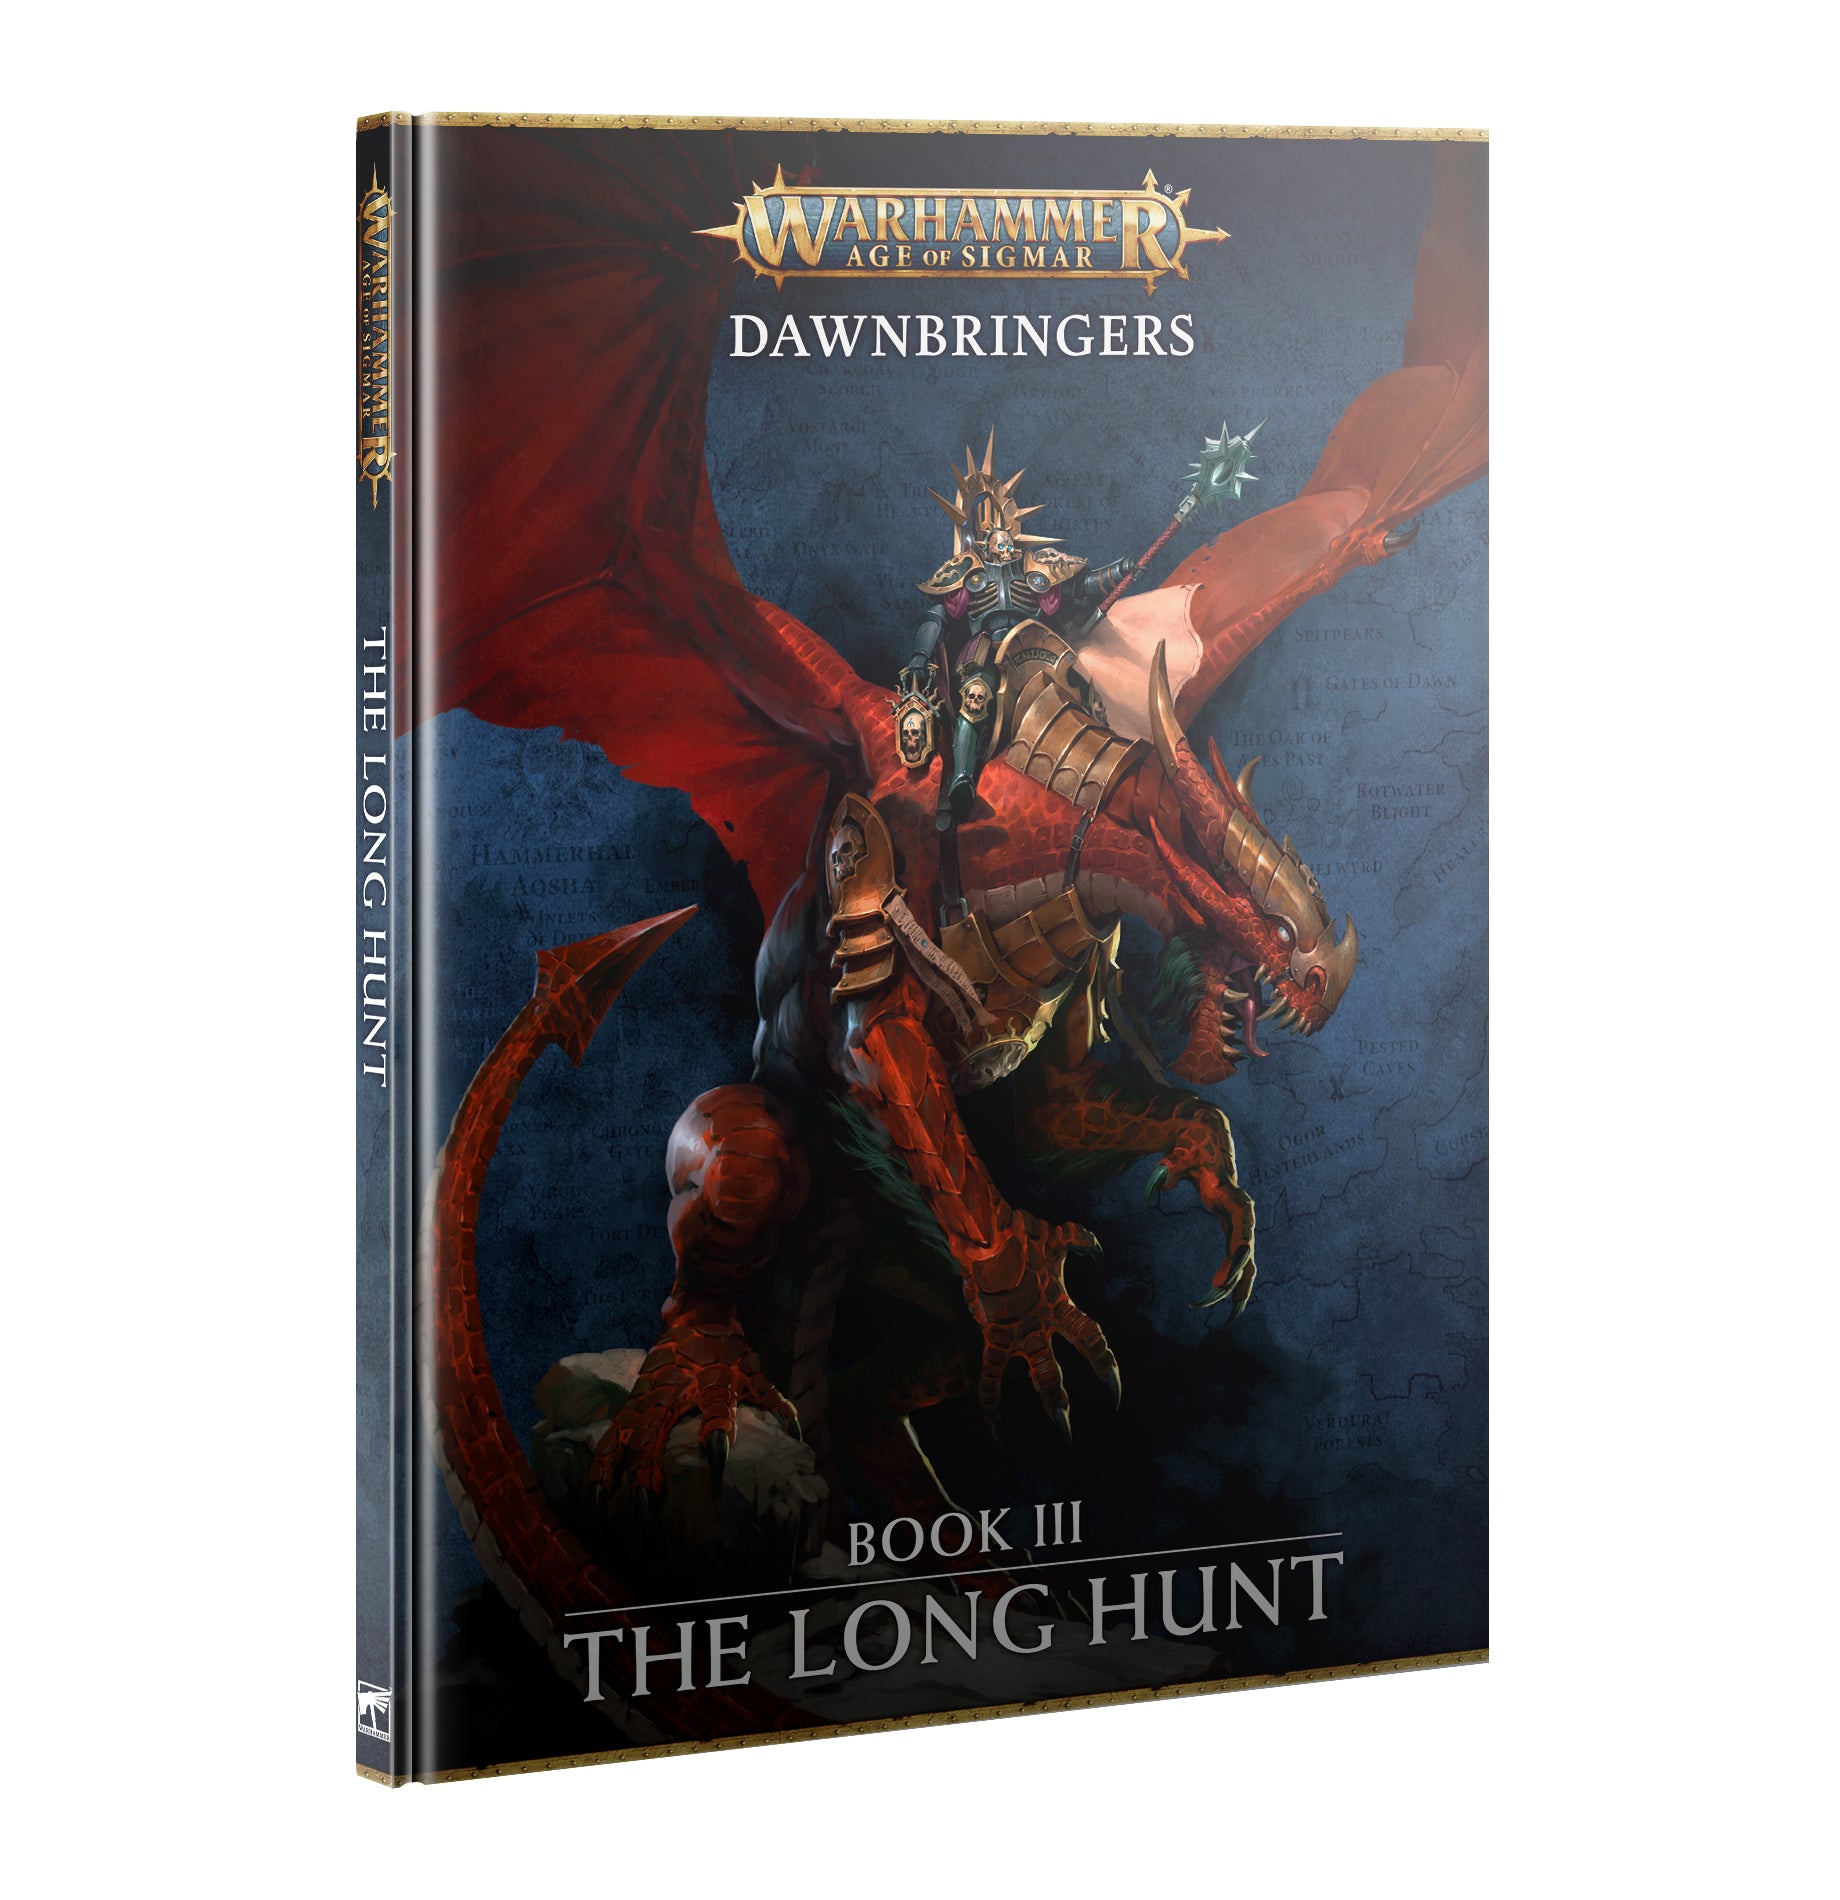 Dawnbringers: The Long Hunt